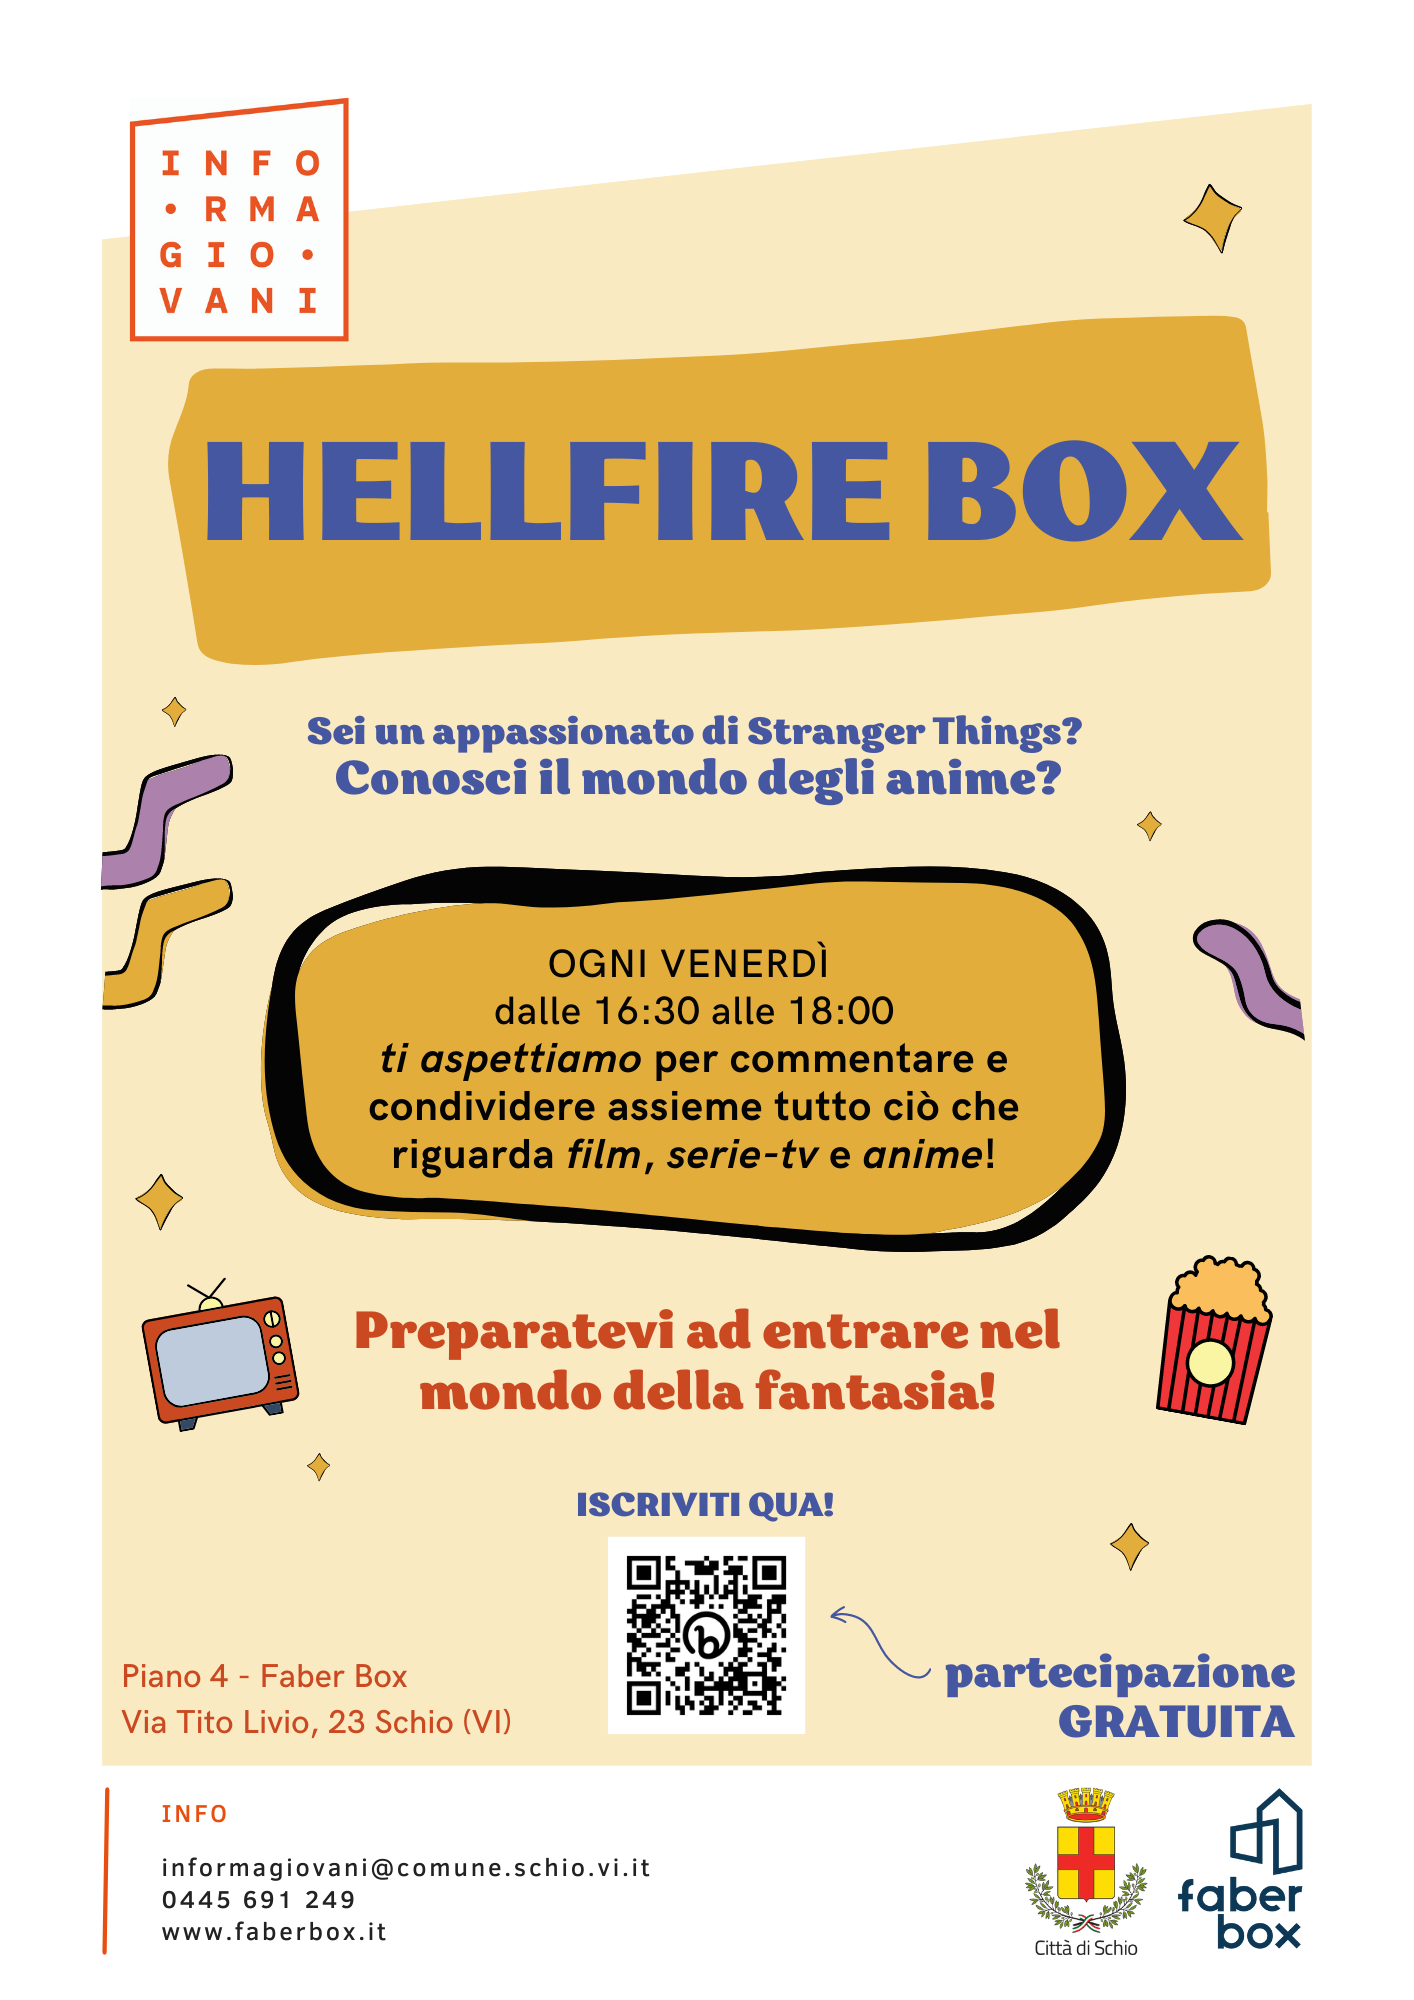 HELLFIRE BOX: FANTASIA E MOLTO ALTRO!